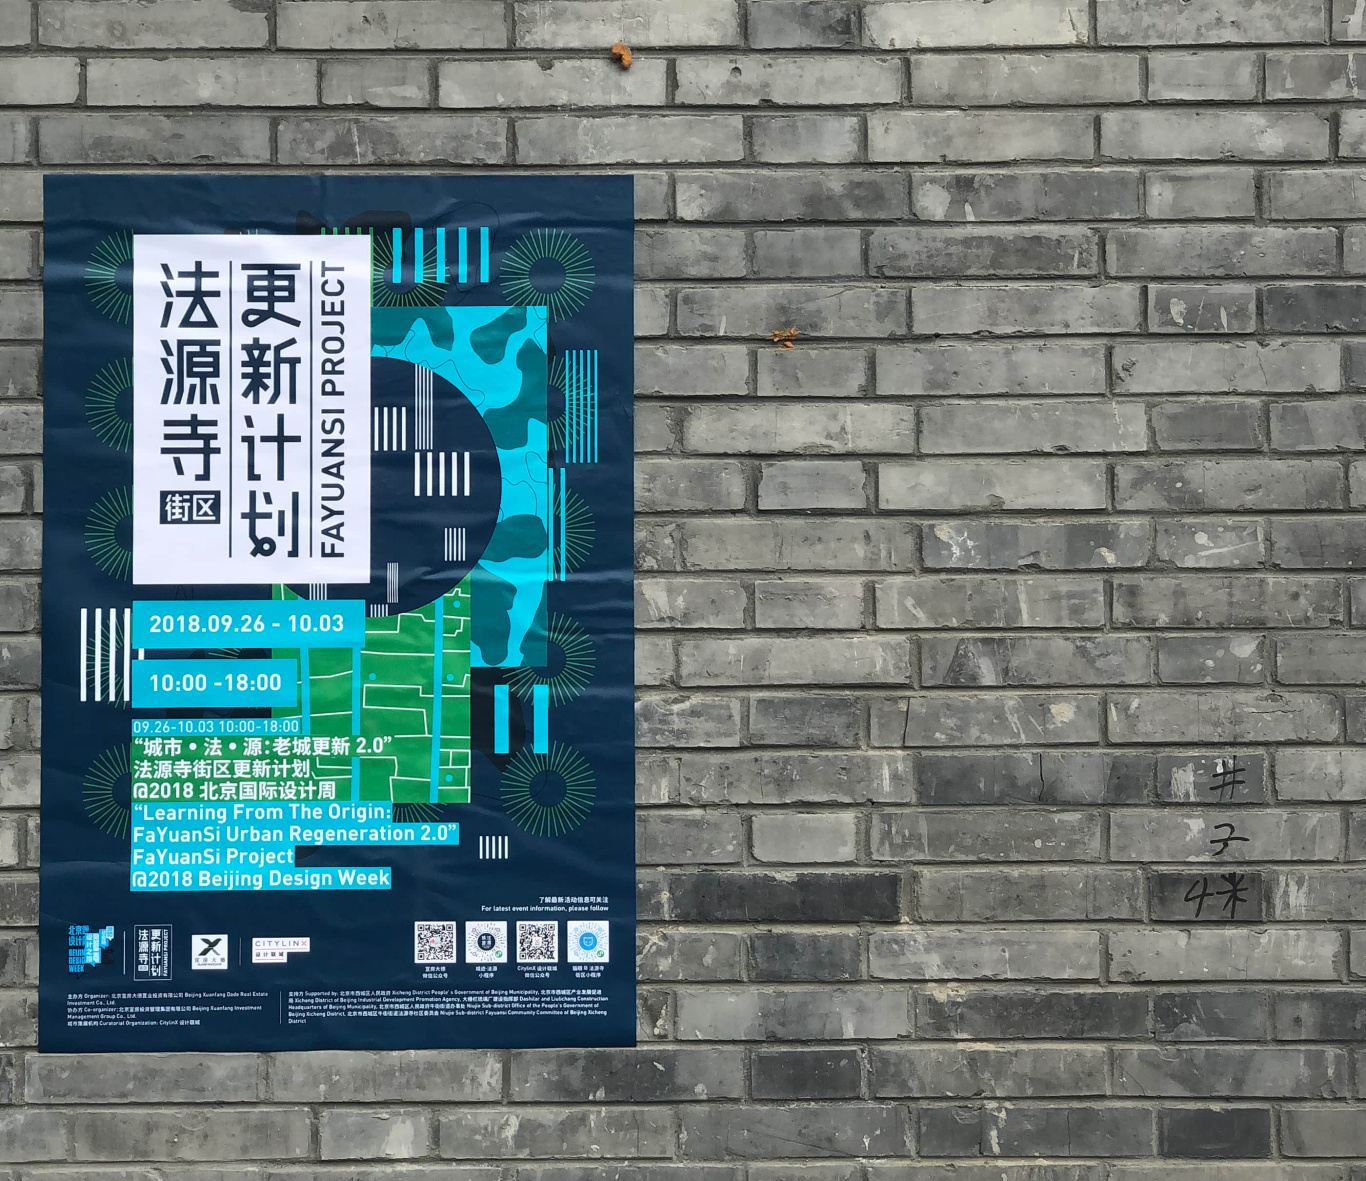 北京设计周分会场法源寺更新计划品牌活动VI全案图32